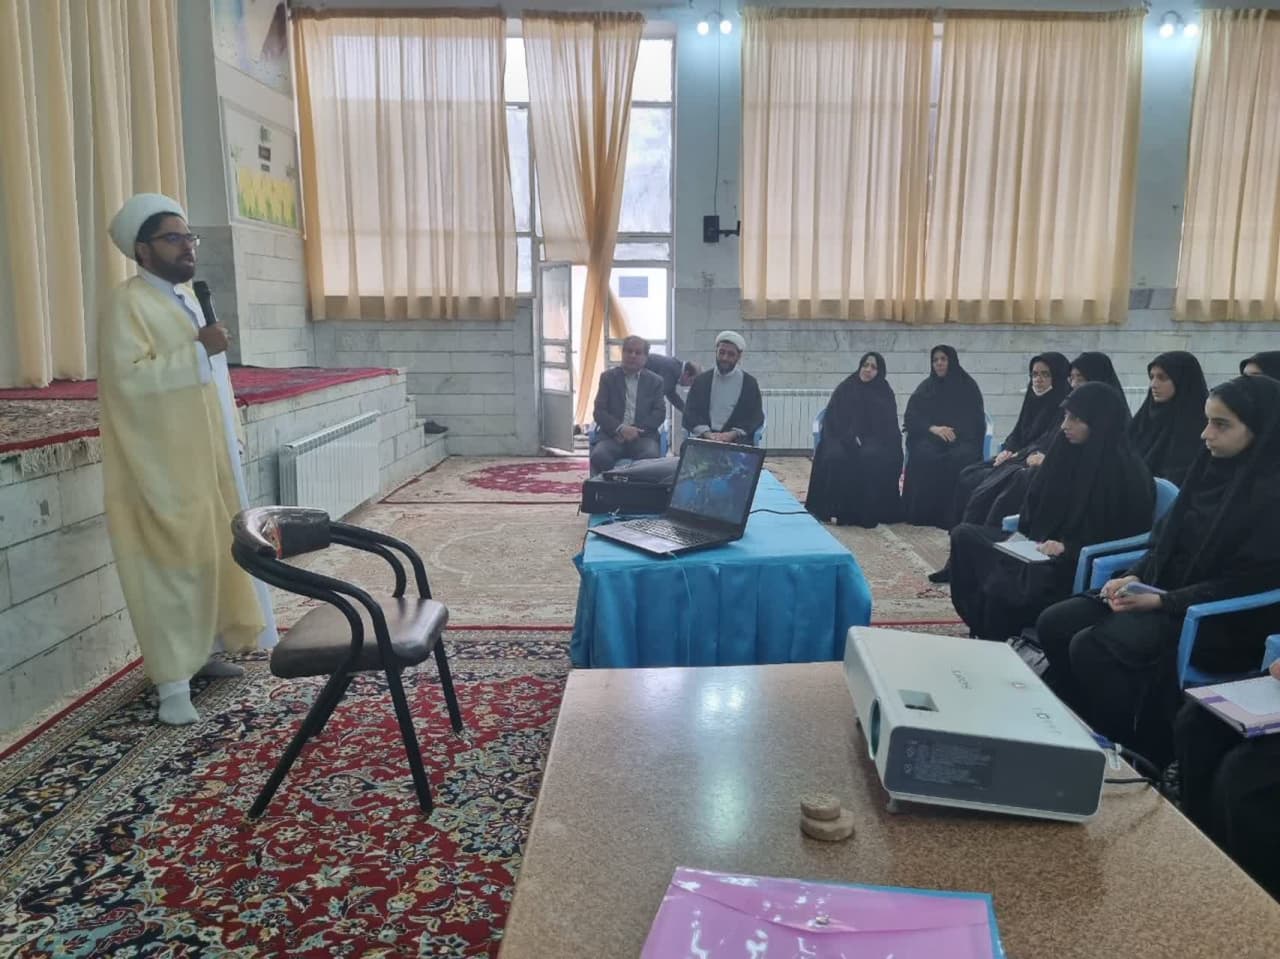 دوره تخصصی معراج نماز در پردیس بنت الهدی صدر فردوس برگزار شد